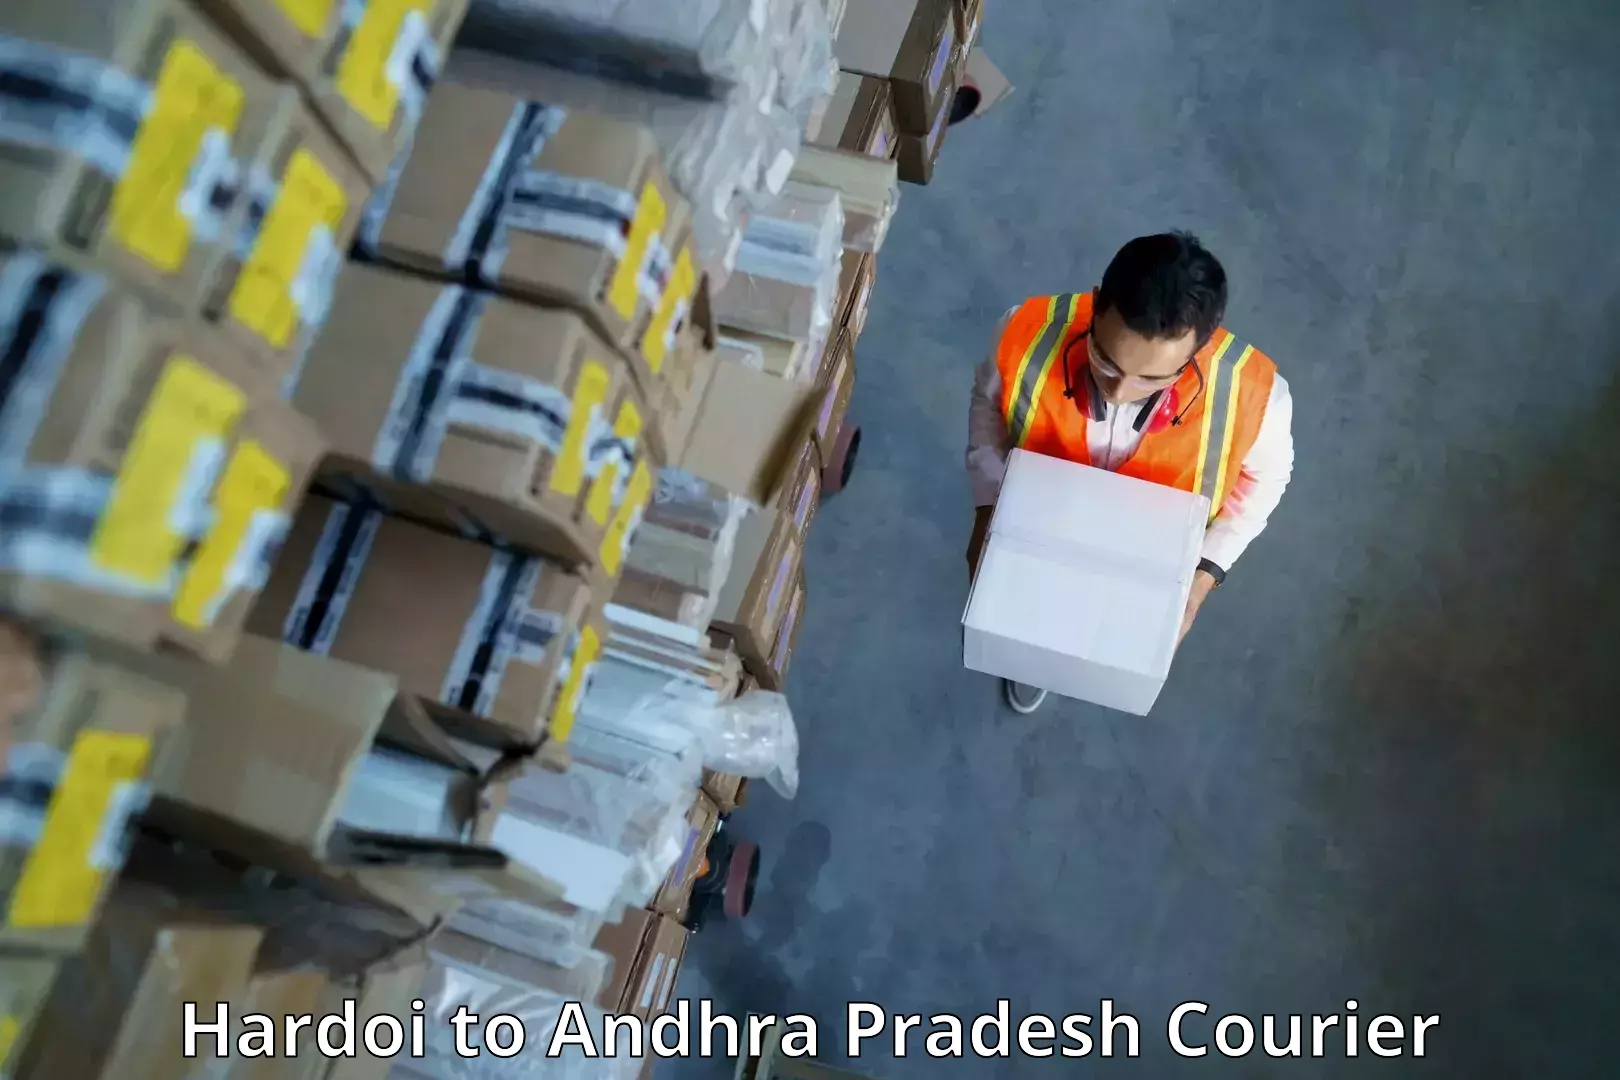 Efficient parcel service Hardoi to Gannavaram